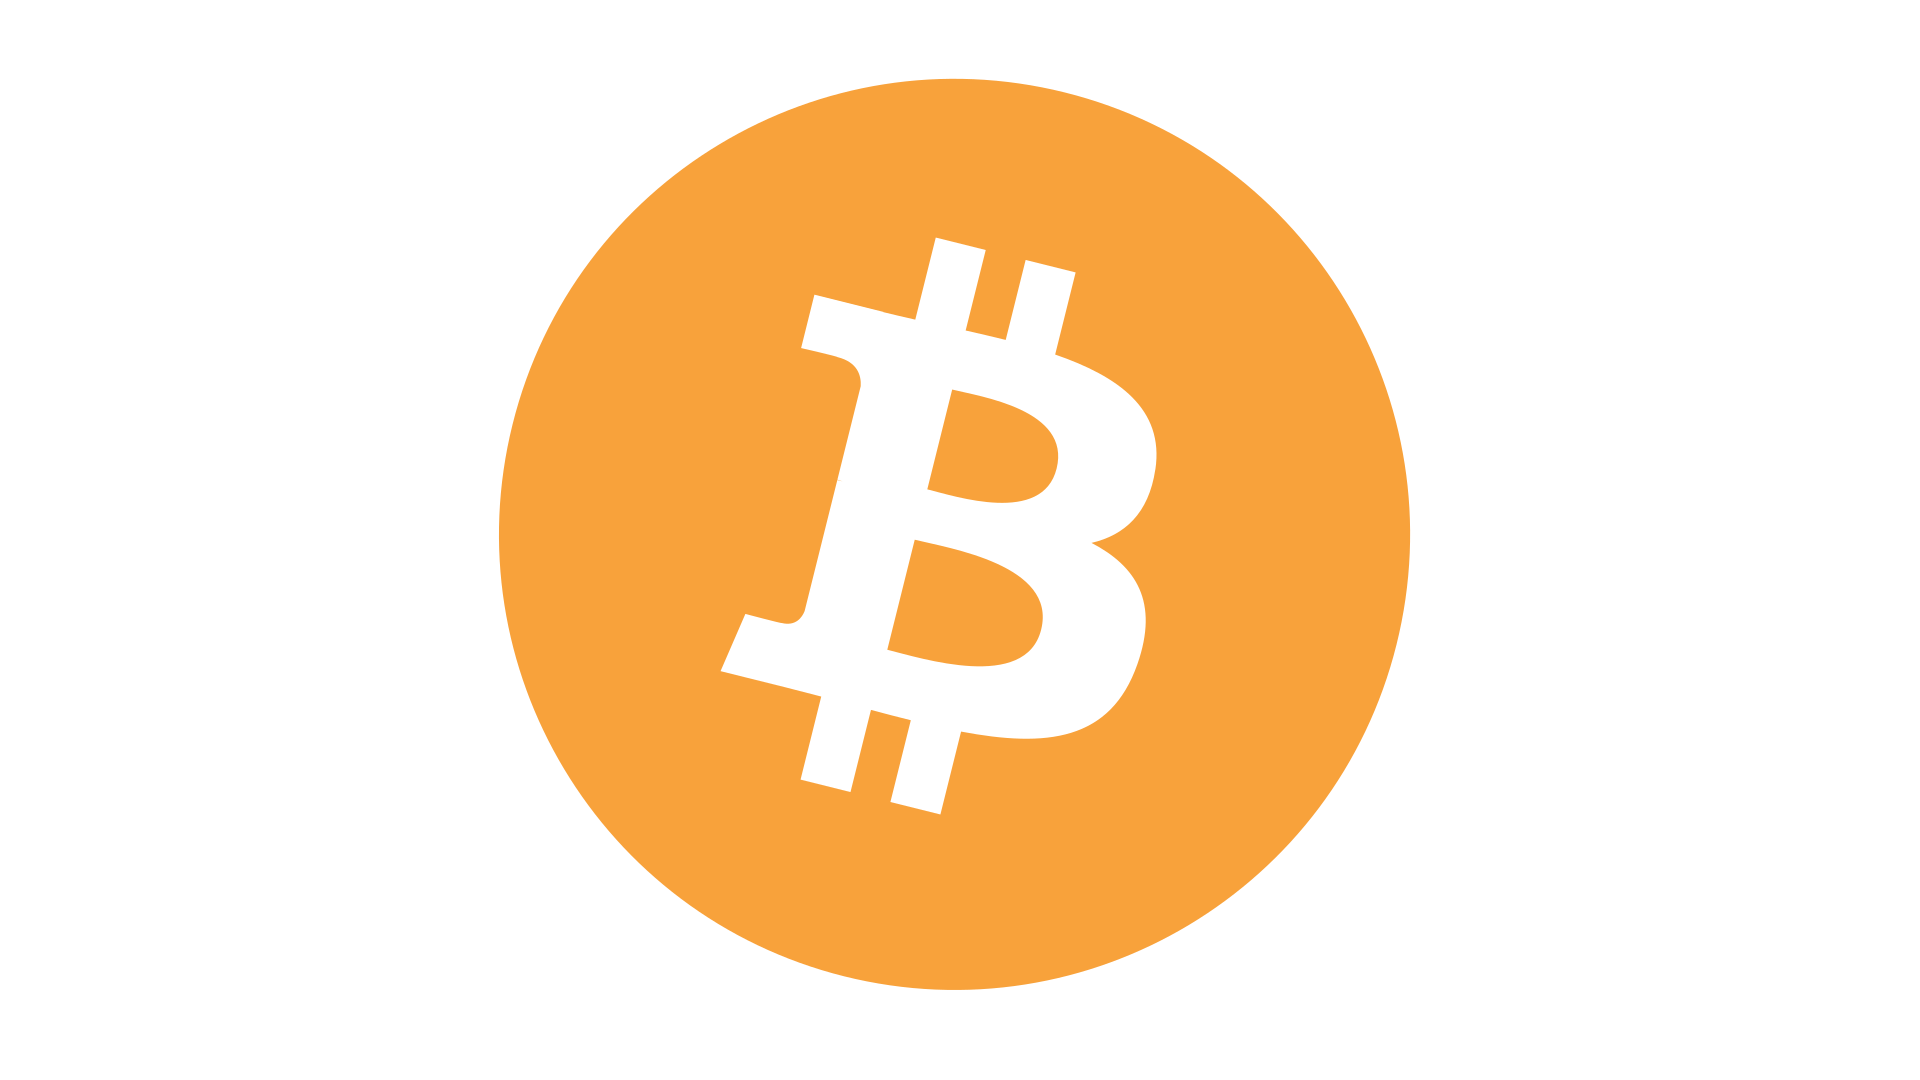 biztonságos a bitcoinba fektetni